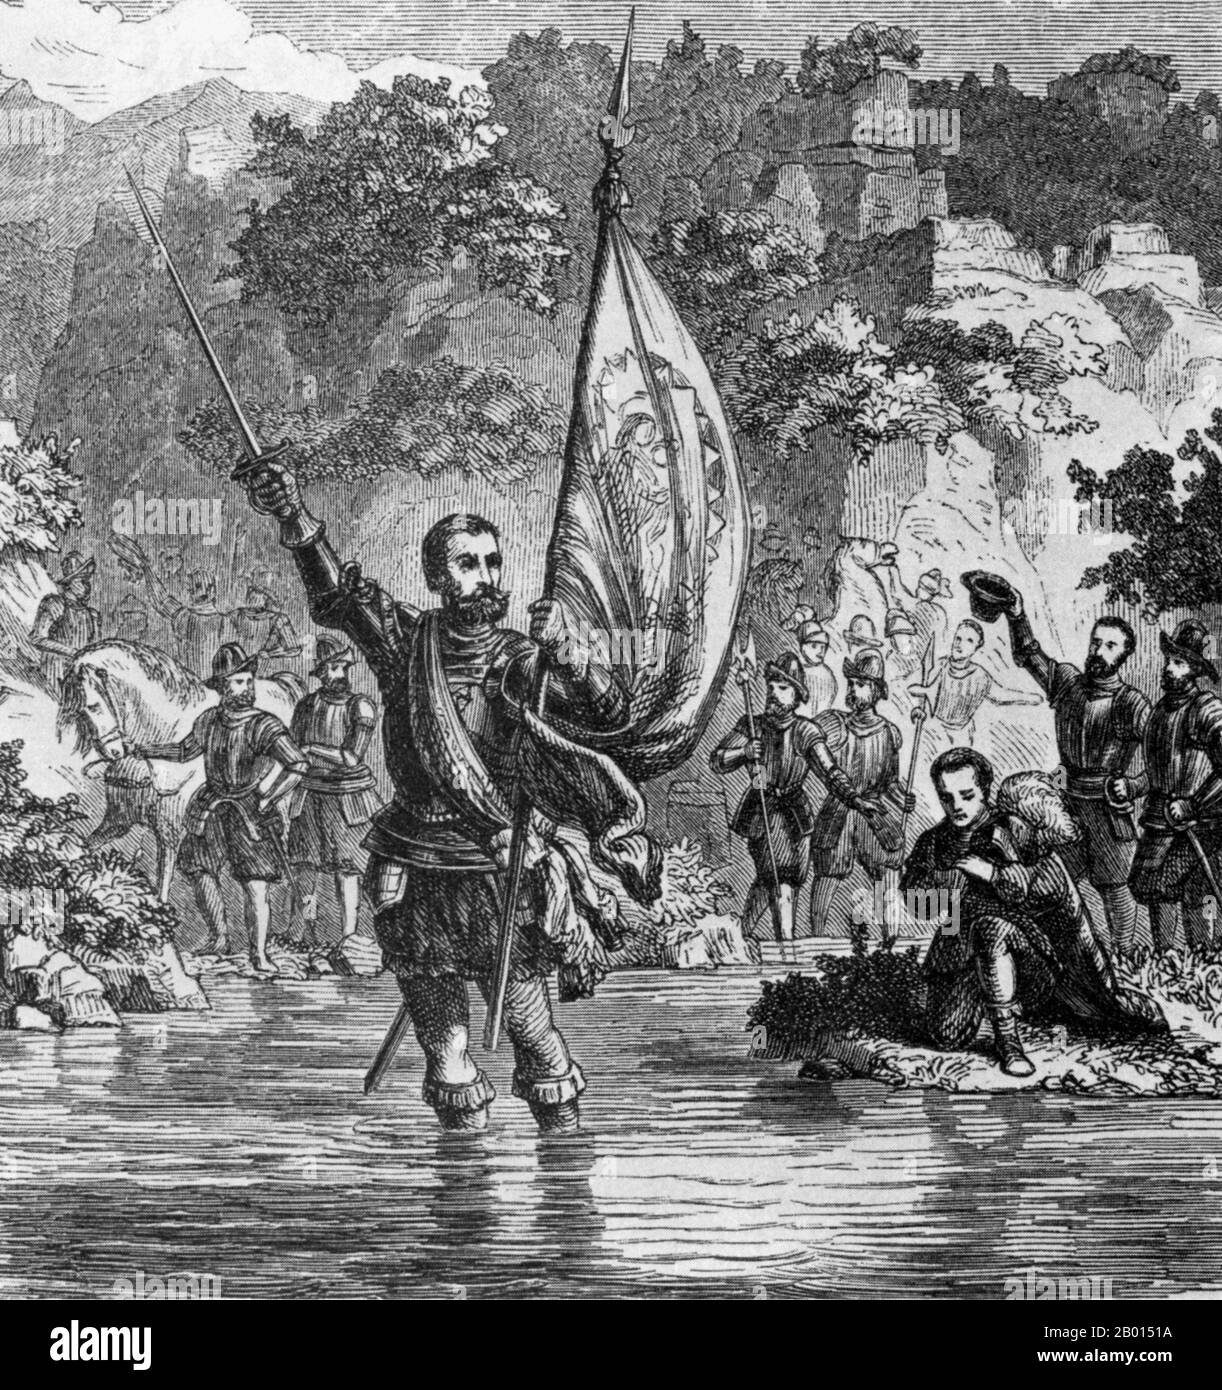 Panama: Vasco Núñez de Balboa (c. 1475-1519), der erste Europäer, der den Pazifischen Ozean sah, nachdem er 1513 den Isthmus von Panama überquert hatte. Holzschnitt-Illustration, c. 1888. Vasco Núñez de Balboa war ein spanischer Entdecker, Gouverneur und Eroberer. Er ist am besten dafür bekannt, dass er 1513 den Isthmus von Panama zum Pazifischen Ozean überquerte und damit der erste Europäer wurde, der eine Expedition führte, die den Pazifik von der Neuen Welt aus gesehen oder erreicht hat. Er reiste 1500 in die Neue Welt und ließ sich nach einigen Erkundungen auf der Insel Hispaniola (heute Dominikanische Republik und Haiti) nieder. Stockfoto